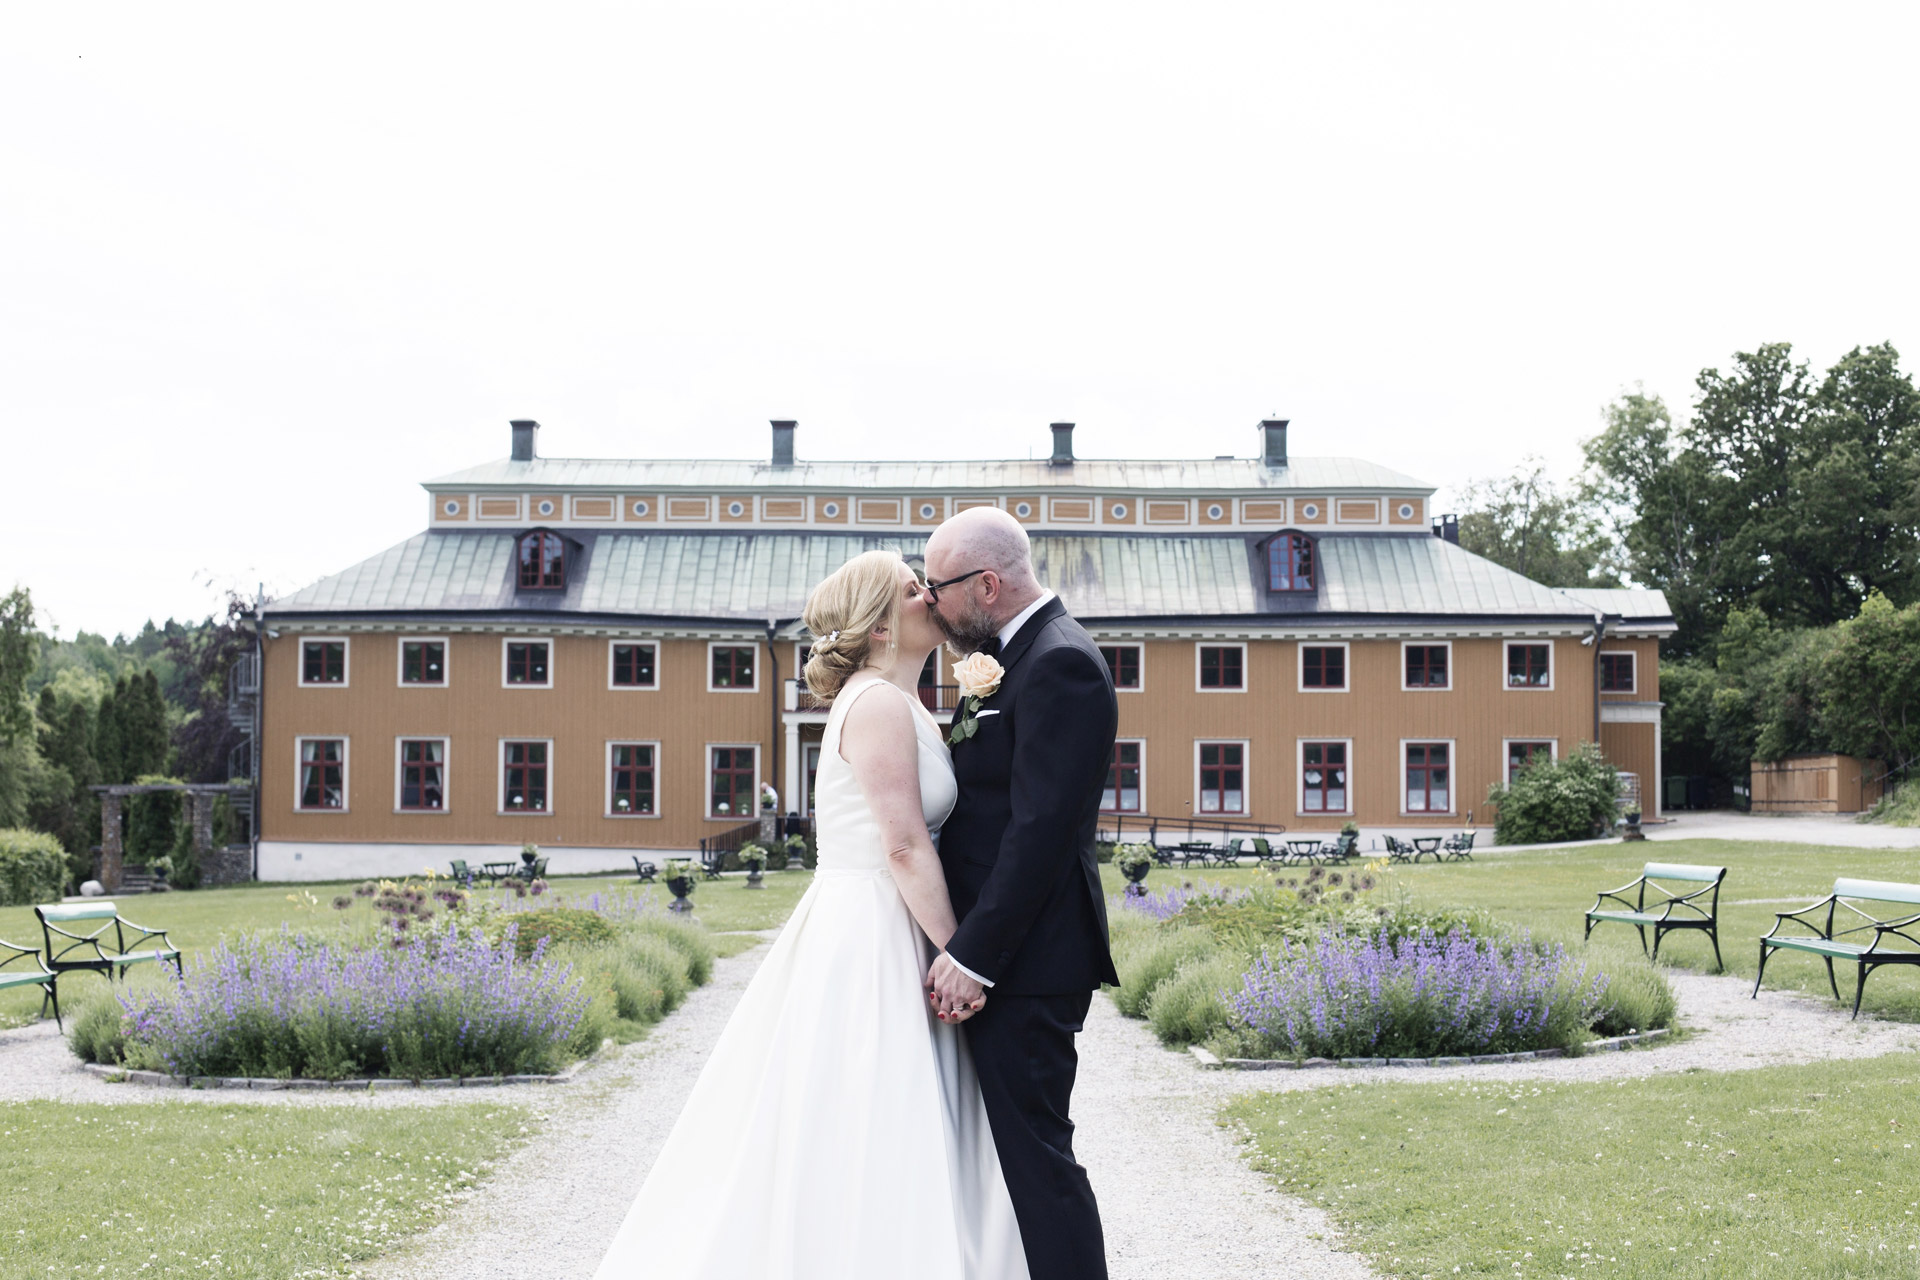 Ett bröllopspar framför Ekebyhovs slott. Det är somrigt och blålila blommor i trädgården.